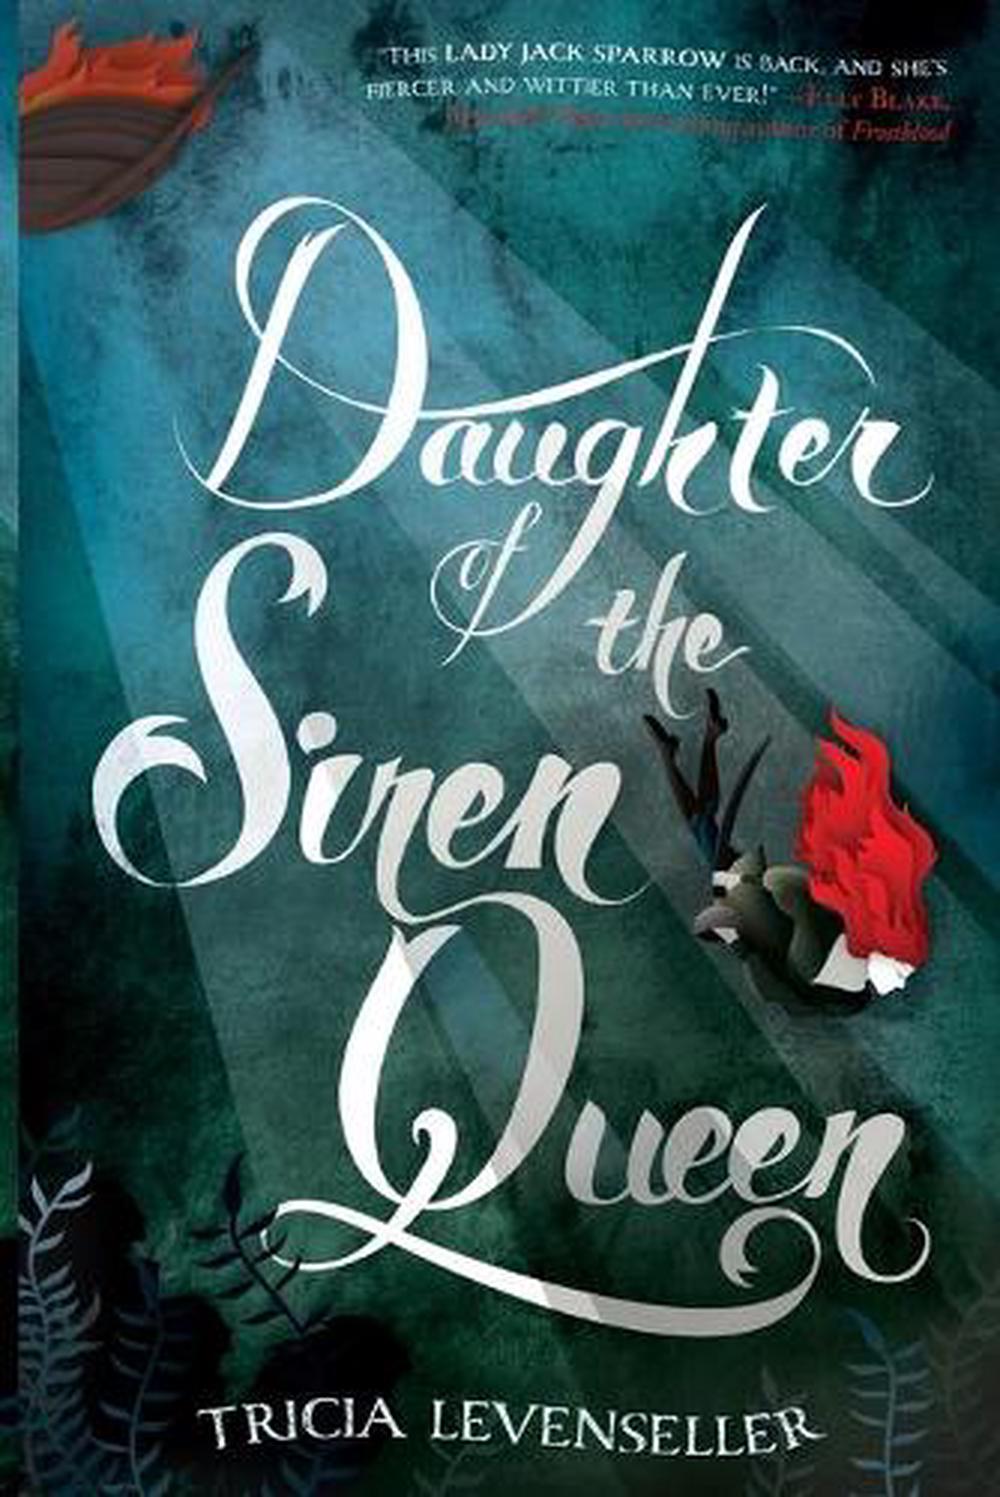 daughter of the siren queen free